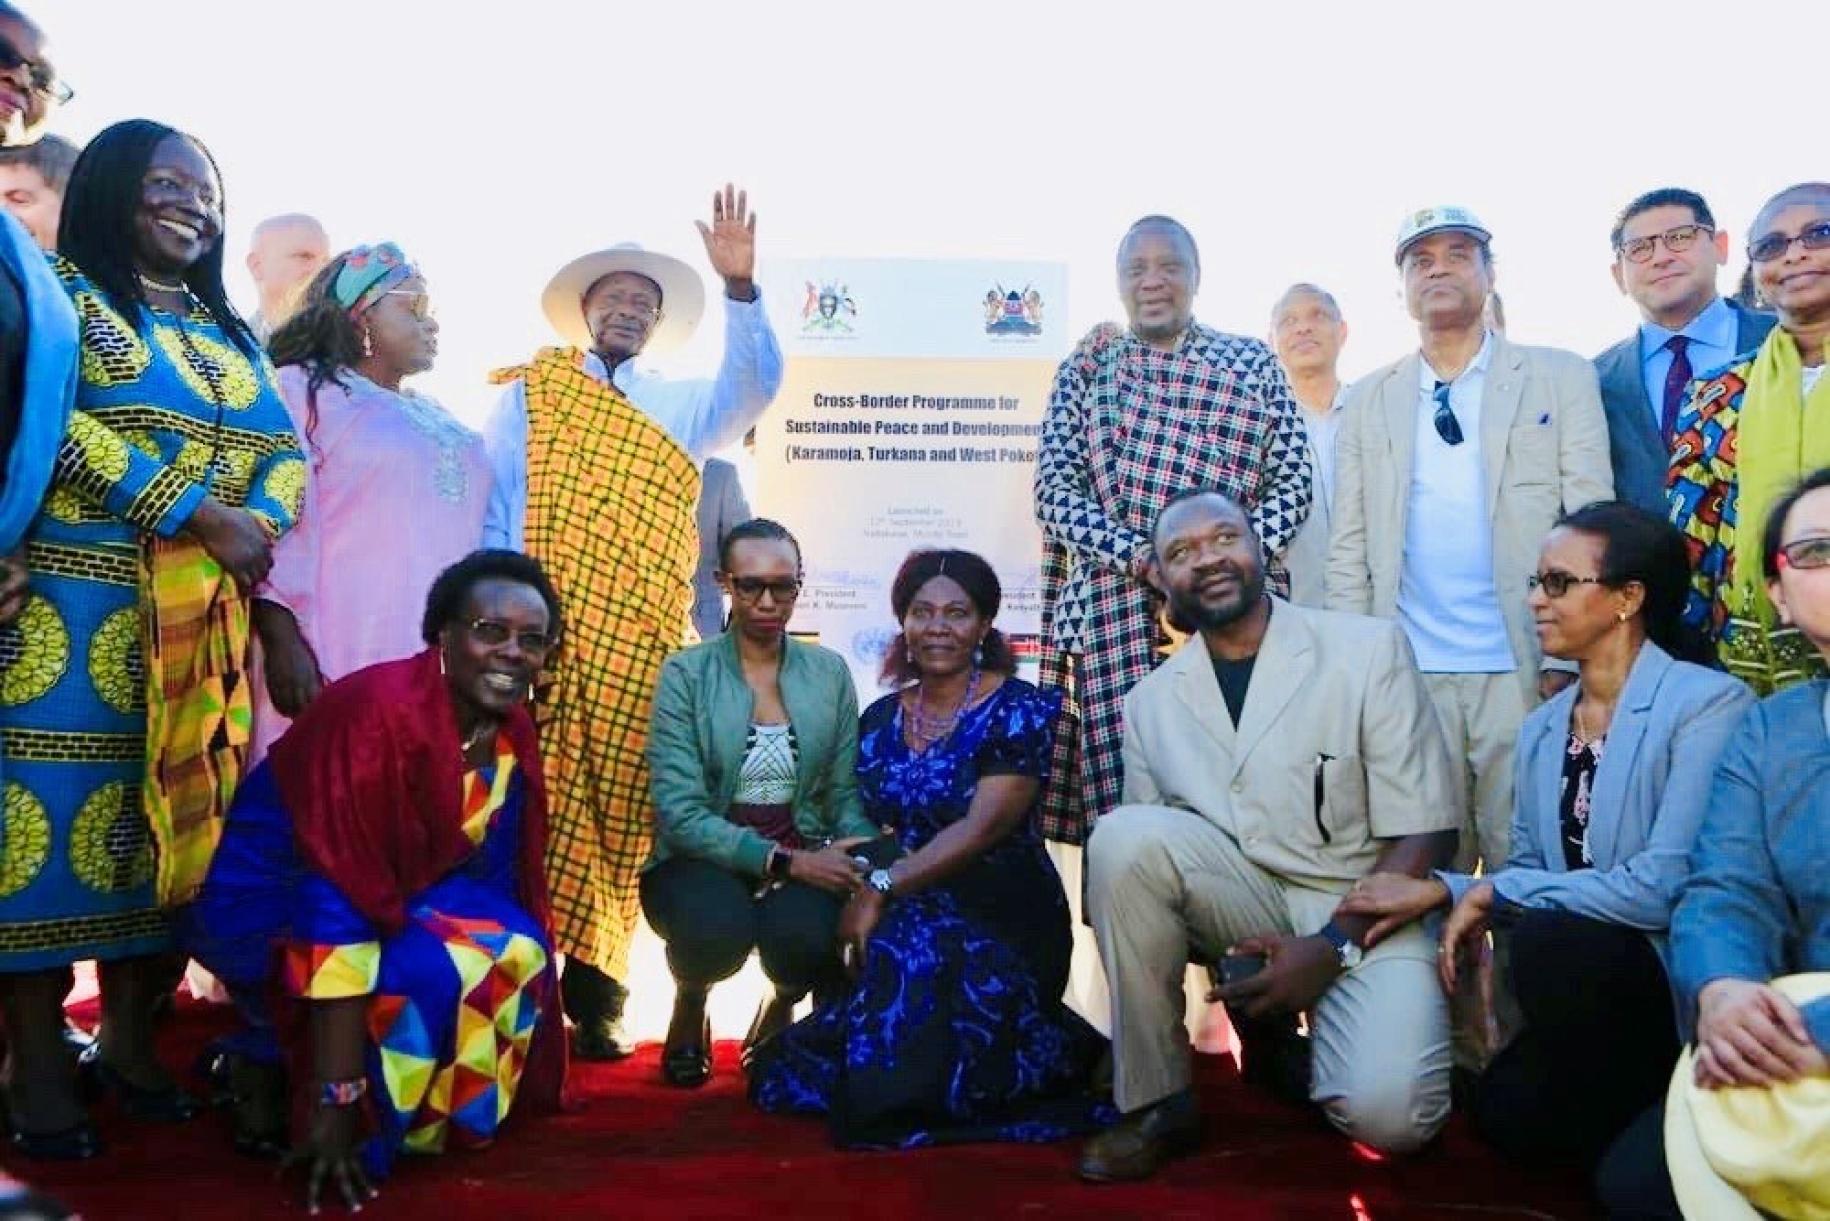 La foto muestra a los presidentes de Kenya y Uganda posando con jefes/as de agencias, fondos y programas y Coordinadores/as Residentes